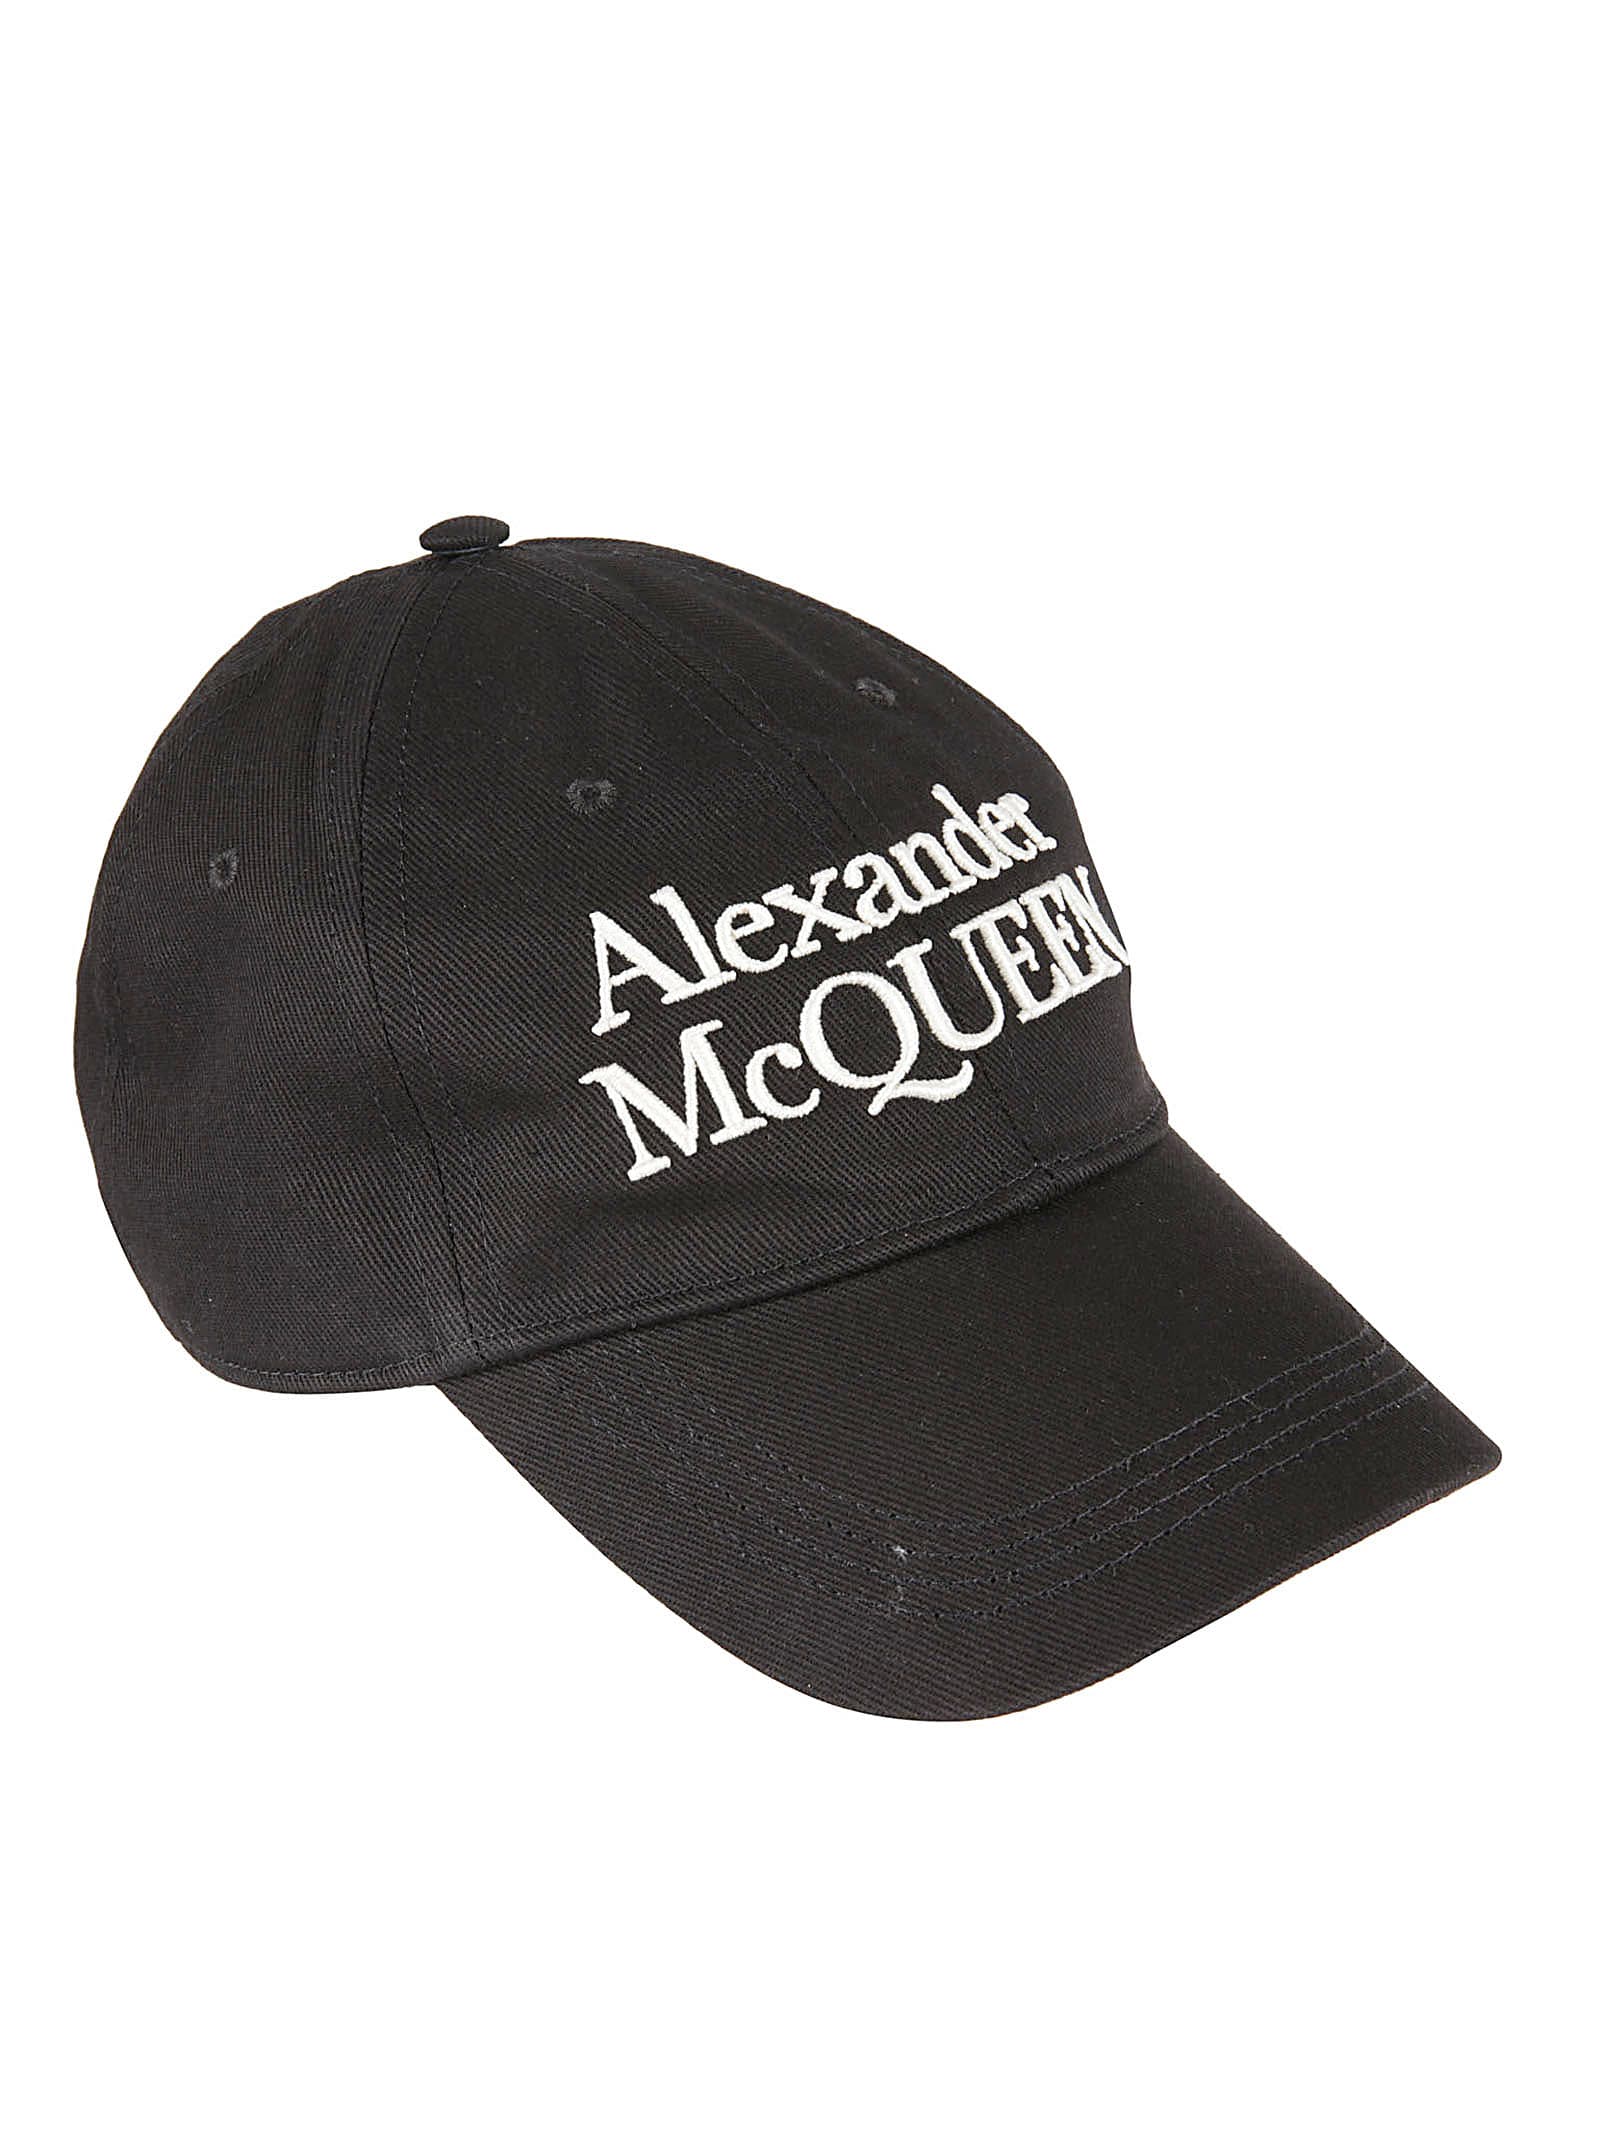 Alexander Mcqueen Stacked Mcqueen Hat In Black/ivory